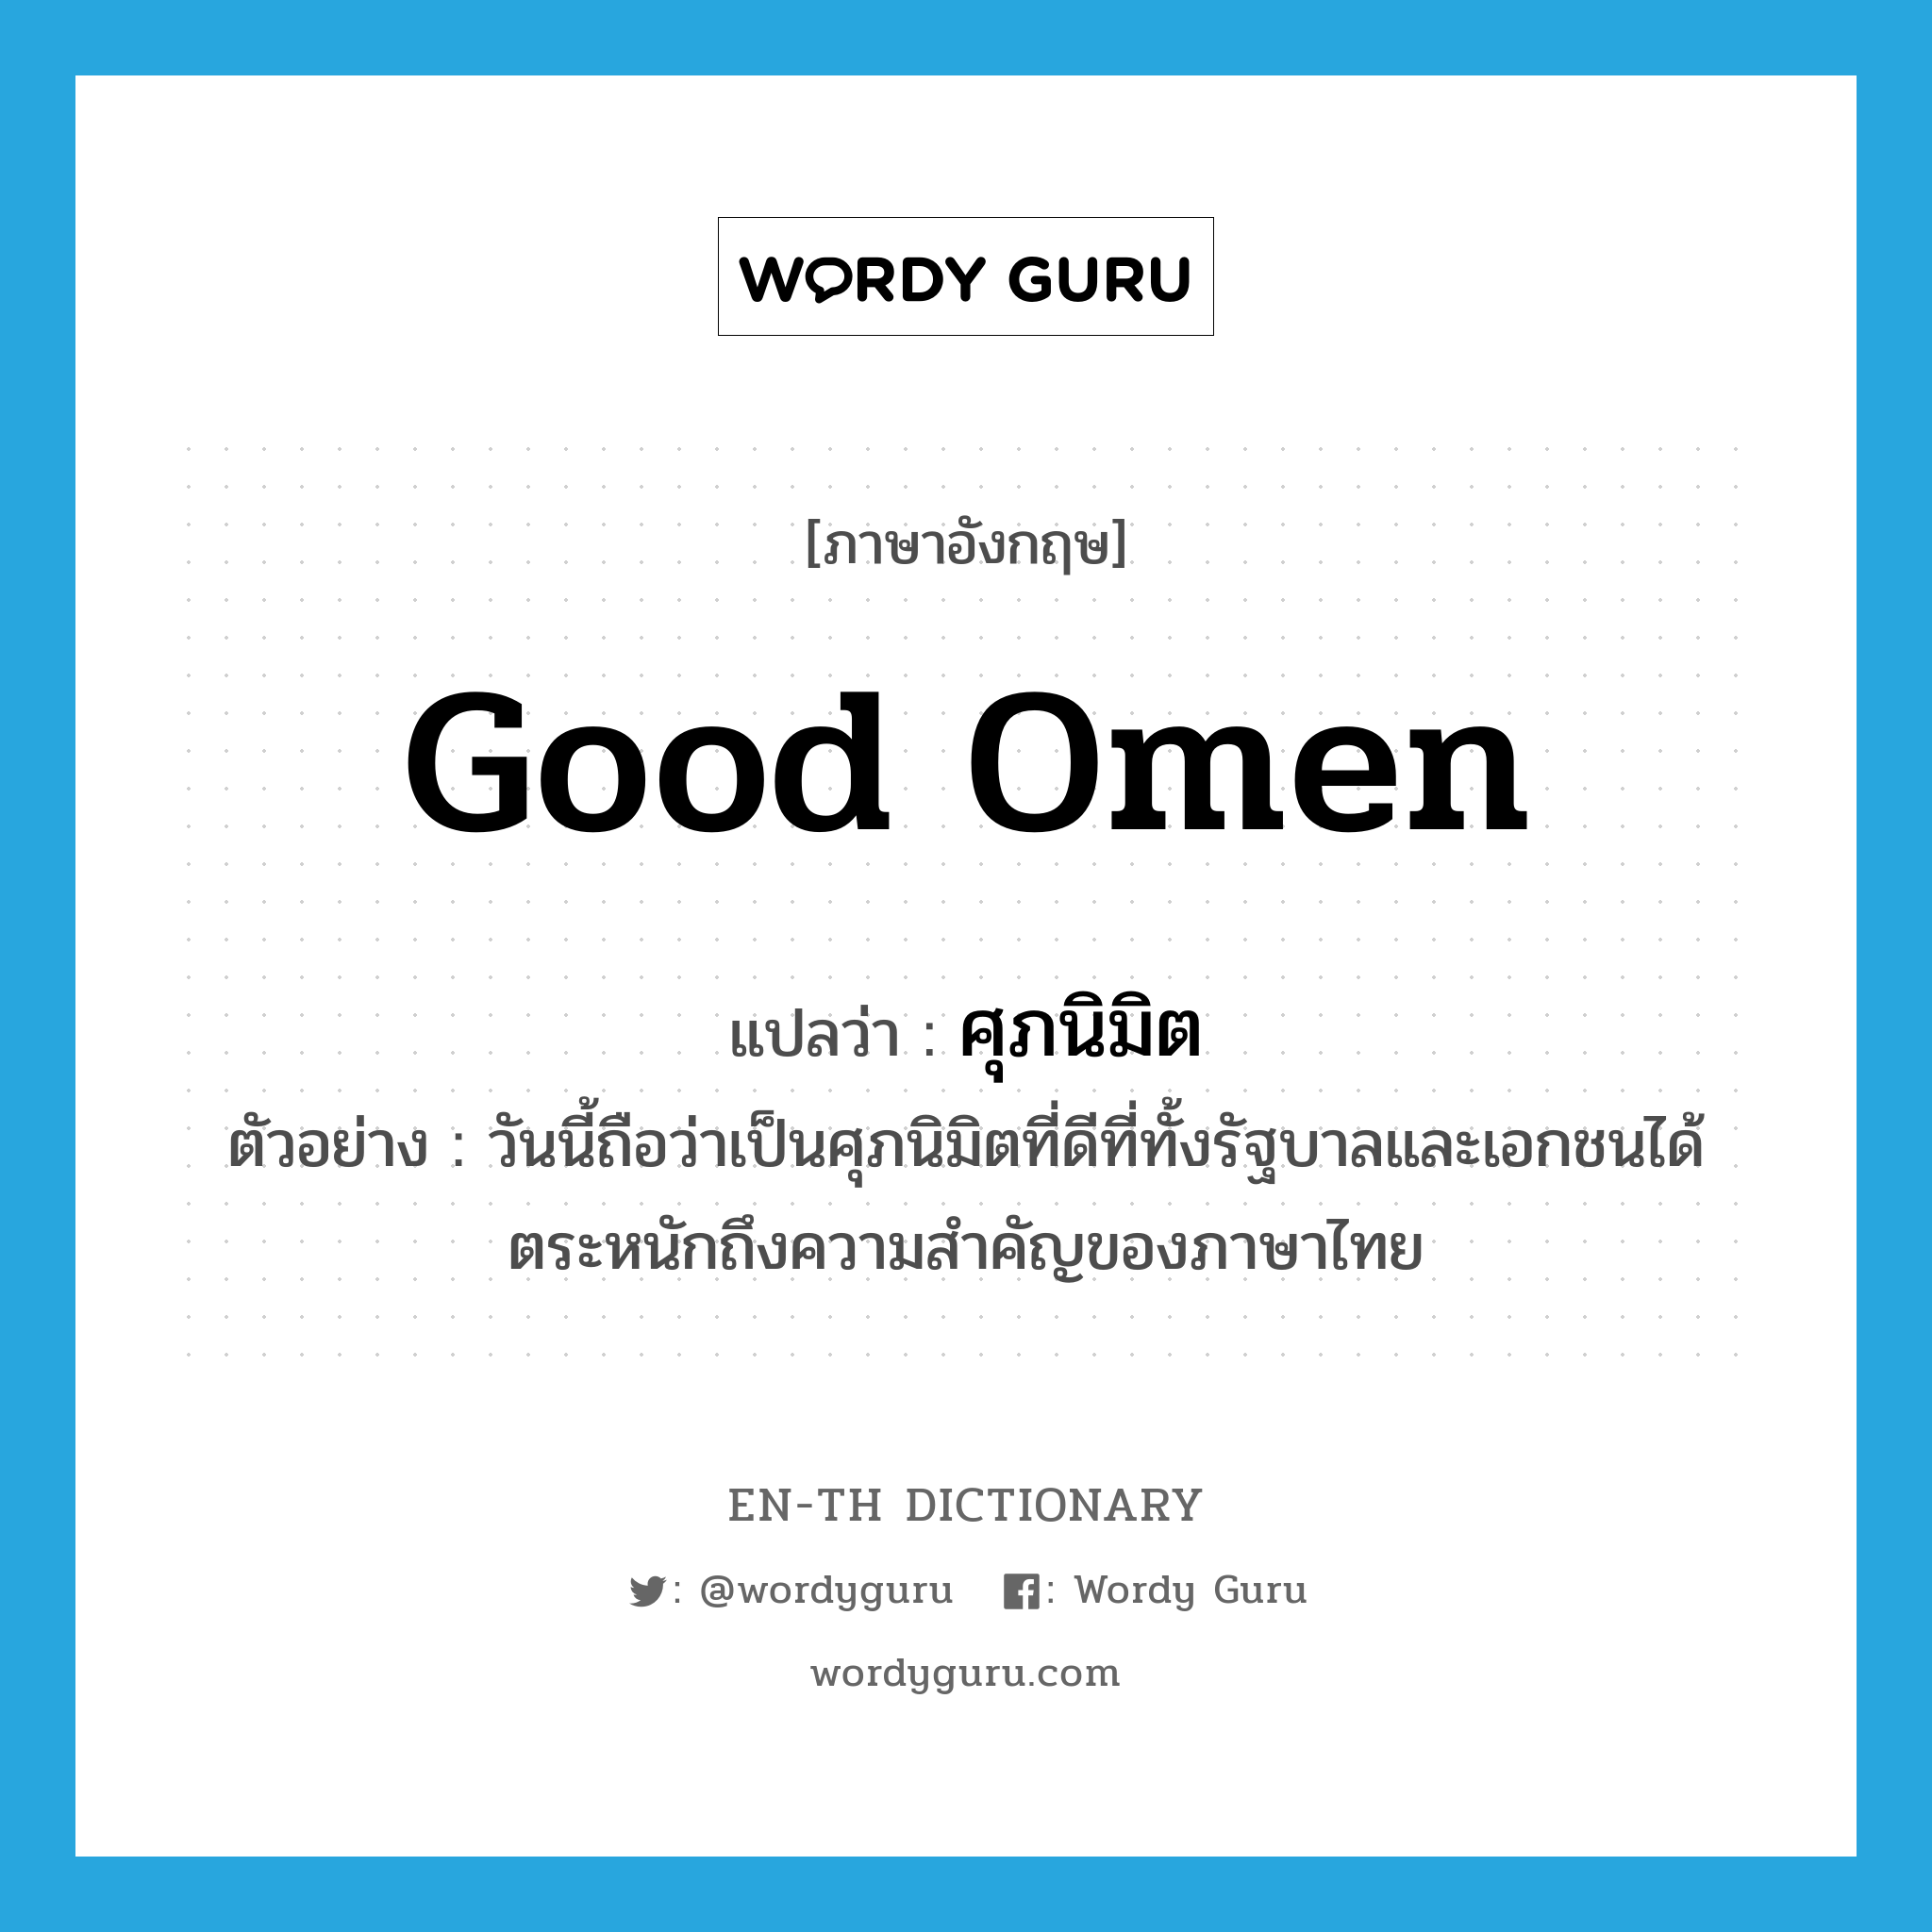 ศุภนิมิต ภาษาอังกฤษ?, คำศัพท์ภาษาอังกฤษ ศุภนิมิต แปลว่า good omen ประเภท N ตัวอย่าง วันนี้ถือว่าเป็นศุภนิมิตที่ดีที่ทั้งรัฐบาลและเอกชนได้ตระหนักถึงความสำคัญของภาษาไทย หมวด N